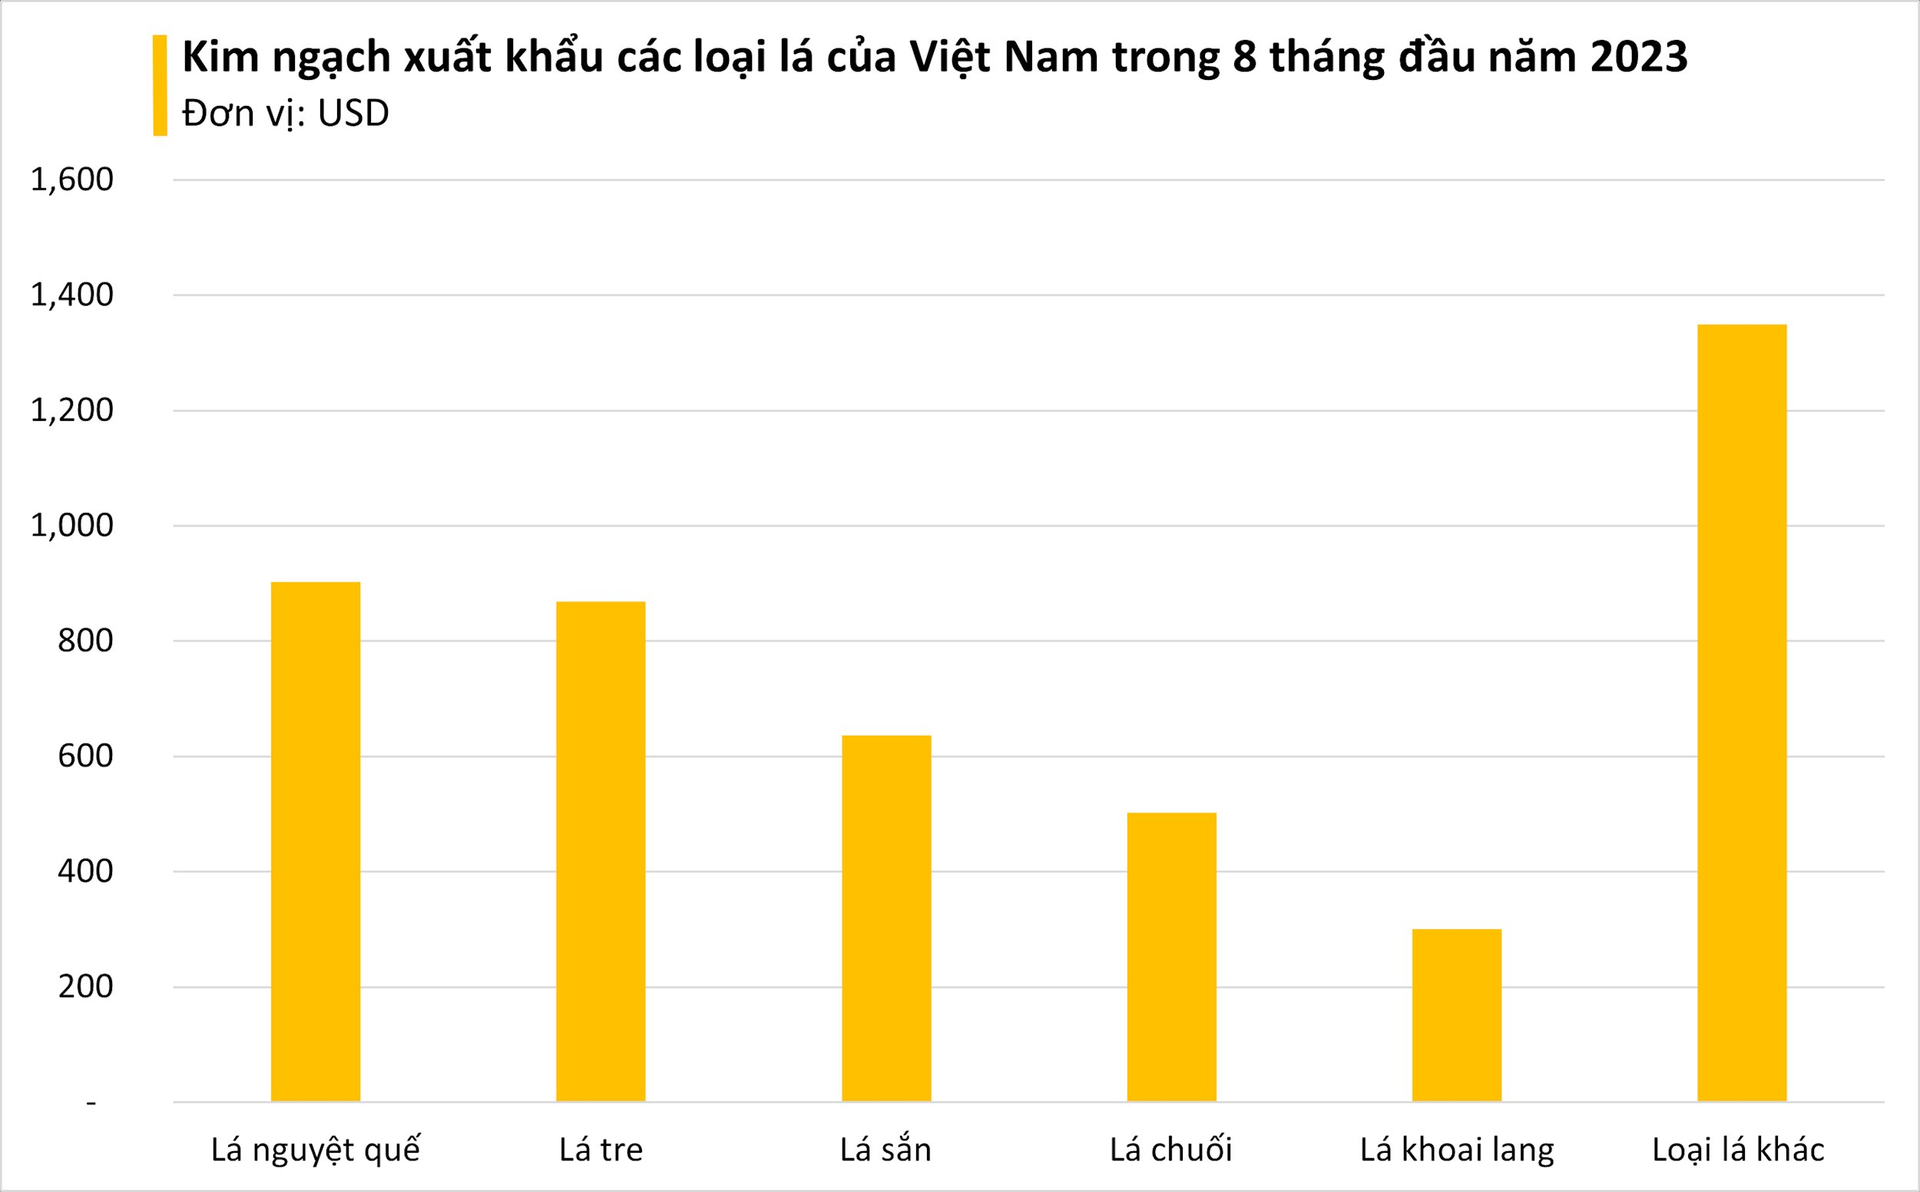 Một loại lá mọc hoang ở Việt Nam chẳng ai lấy, sang nước ngoài bỗng thành hàng 'hot': xuất khẩu với giá đắt đỏ, thu về hàng chục tỷ đồng - Ảnh 2.